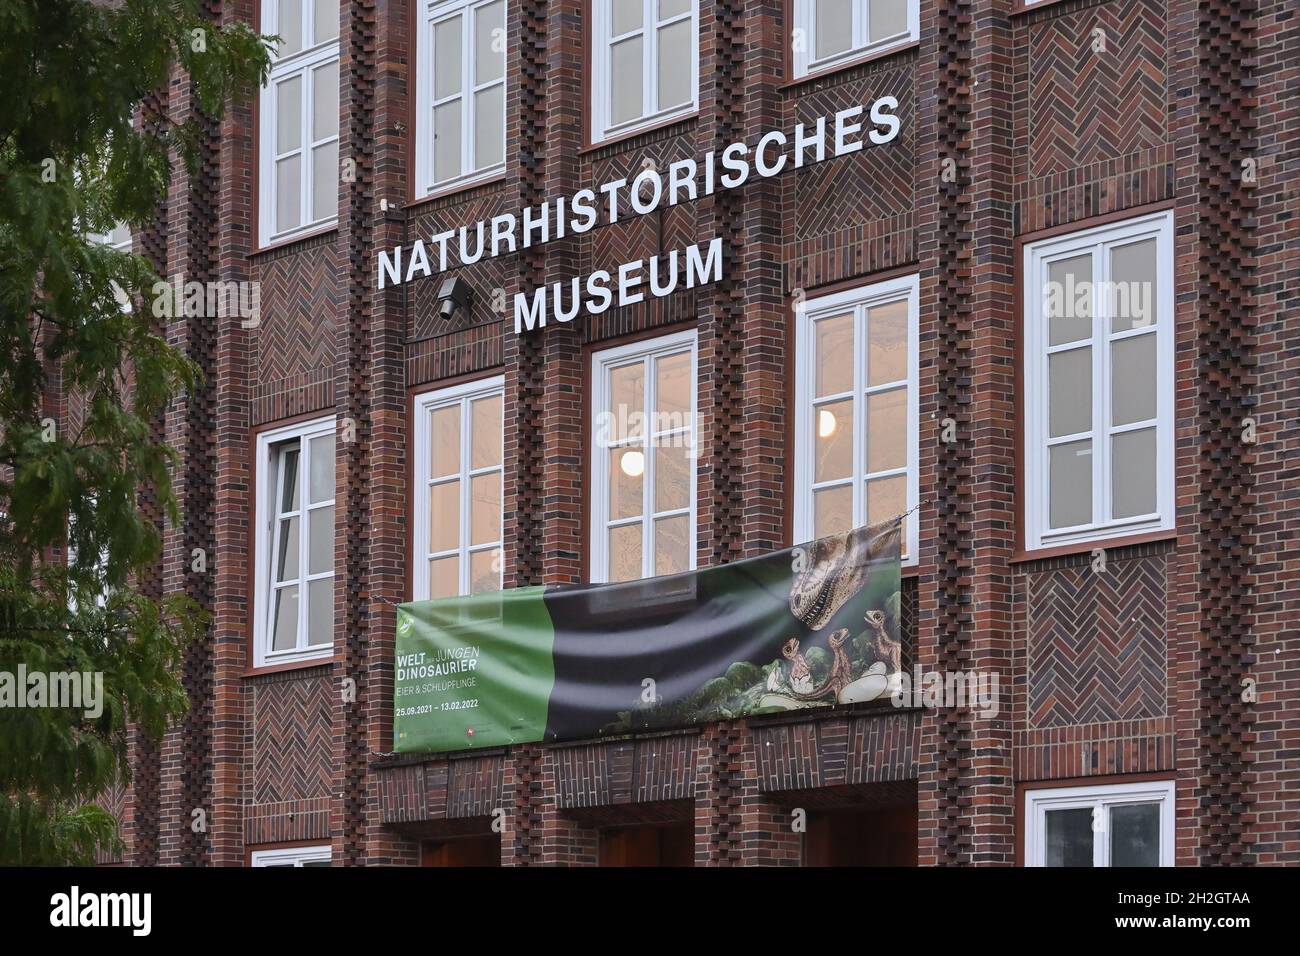 Naturhistorisches Museum Braunschweig, Museo di Storia Naturale dello Stato di Braunschweig, Germania. Museo di zoologia scientifica, fondato nel 1754. Foto Stock